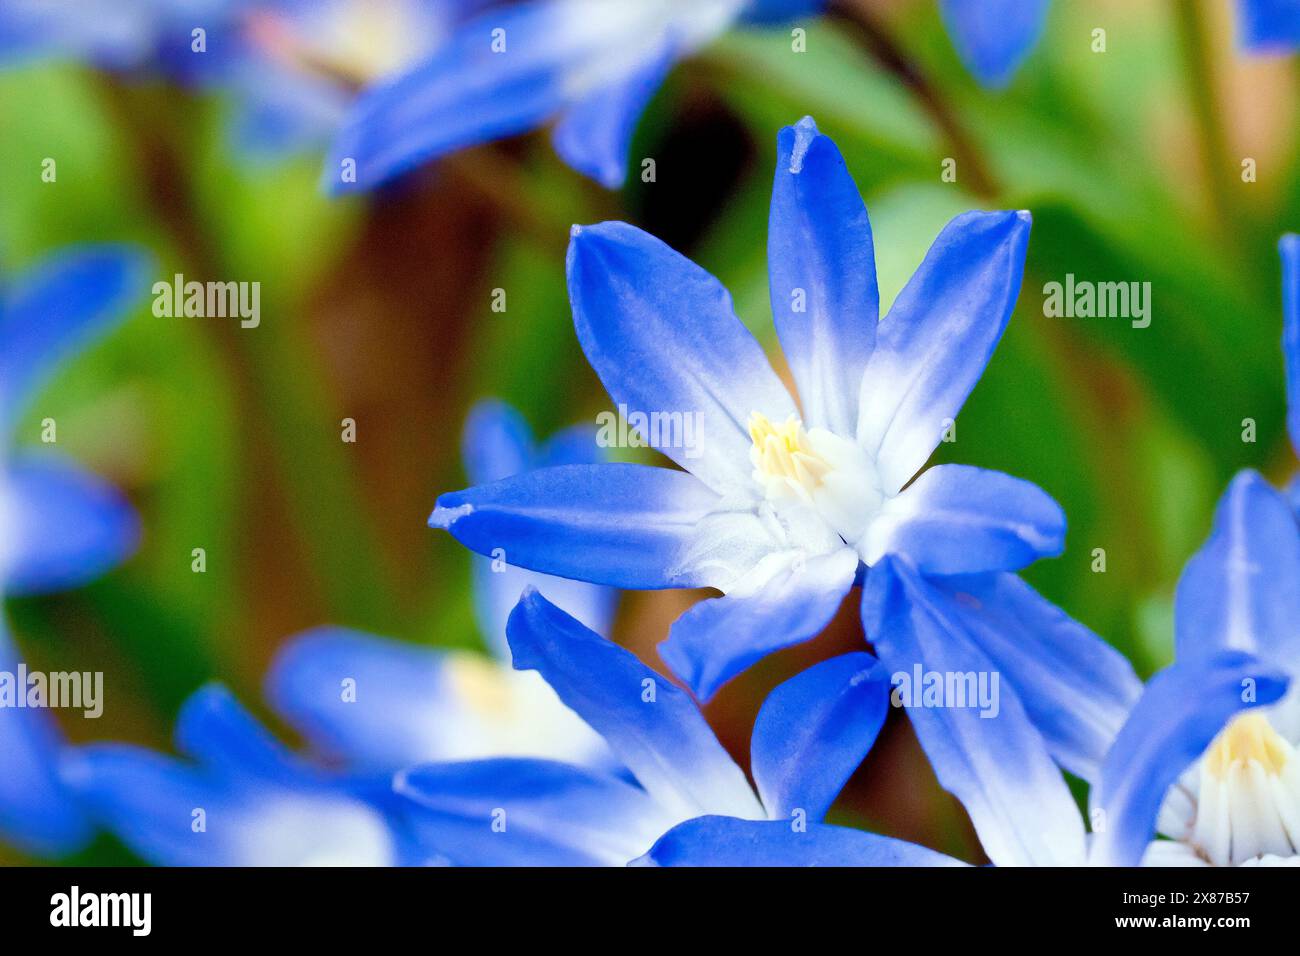 Spring Squill (scilla Verna), vielleicht Glory-of-the-Snow (scilla forbesii oder luciliae, chionodoxa siehei), Nahaufnahme einer einzigen blauen Blume aus vielen. Stockfoto